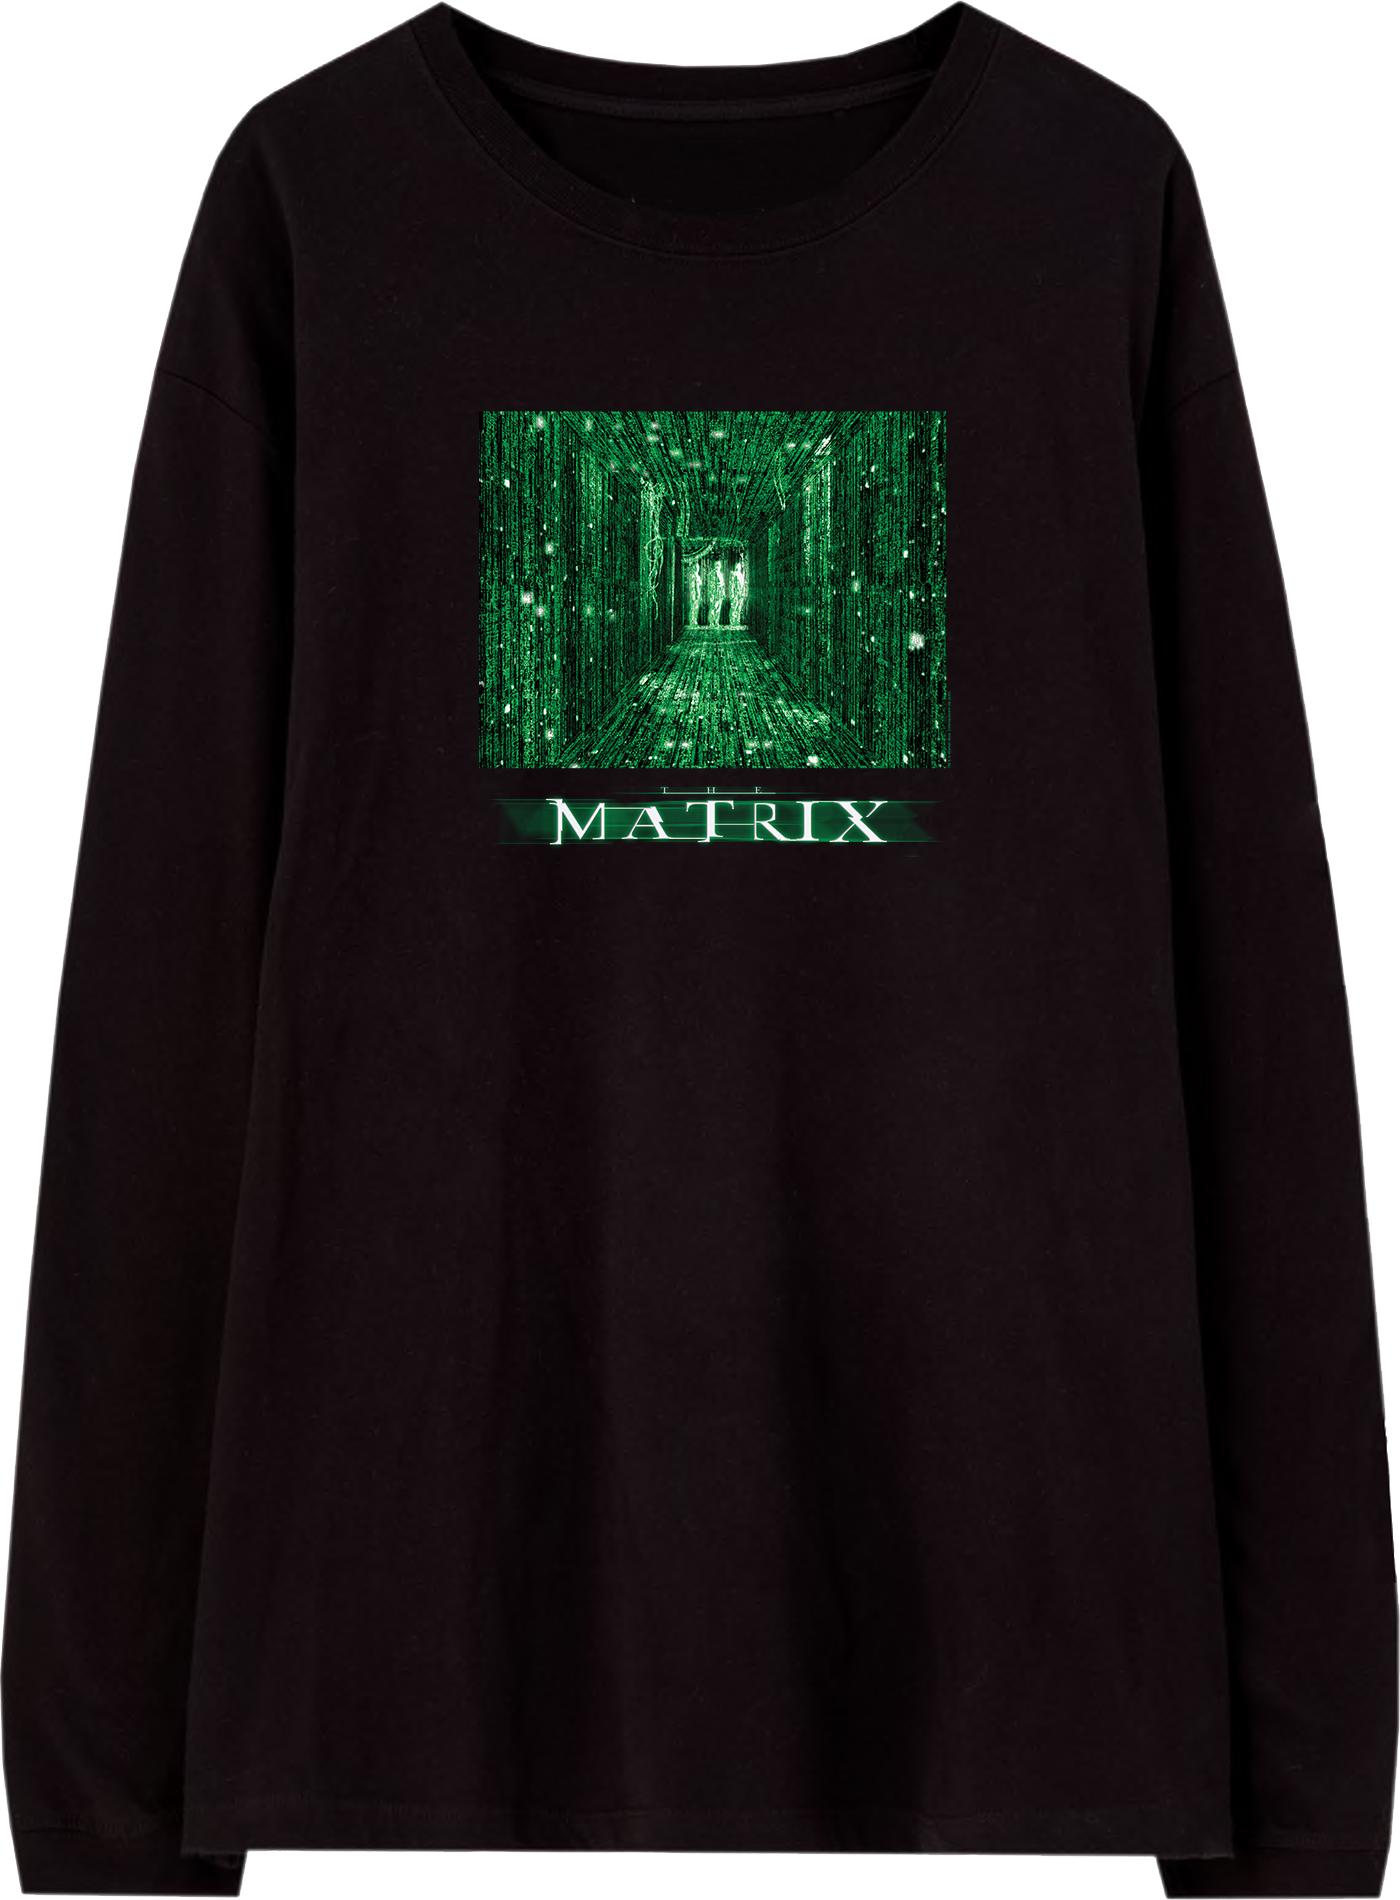 BILMTX00010-MENS TEE-The Matrix Cube-BLK-CADT.png